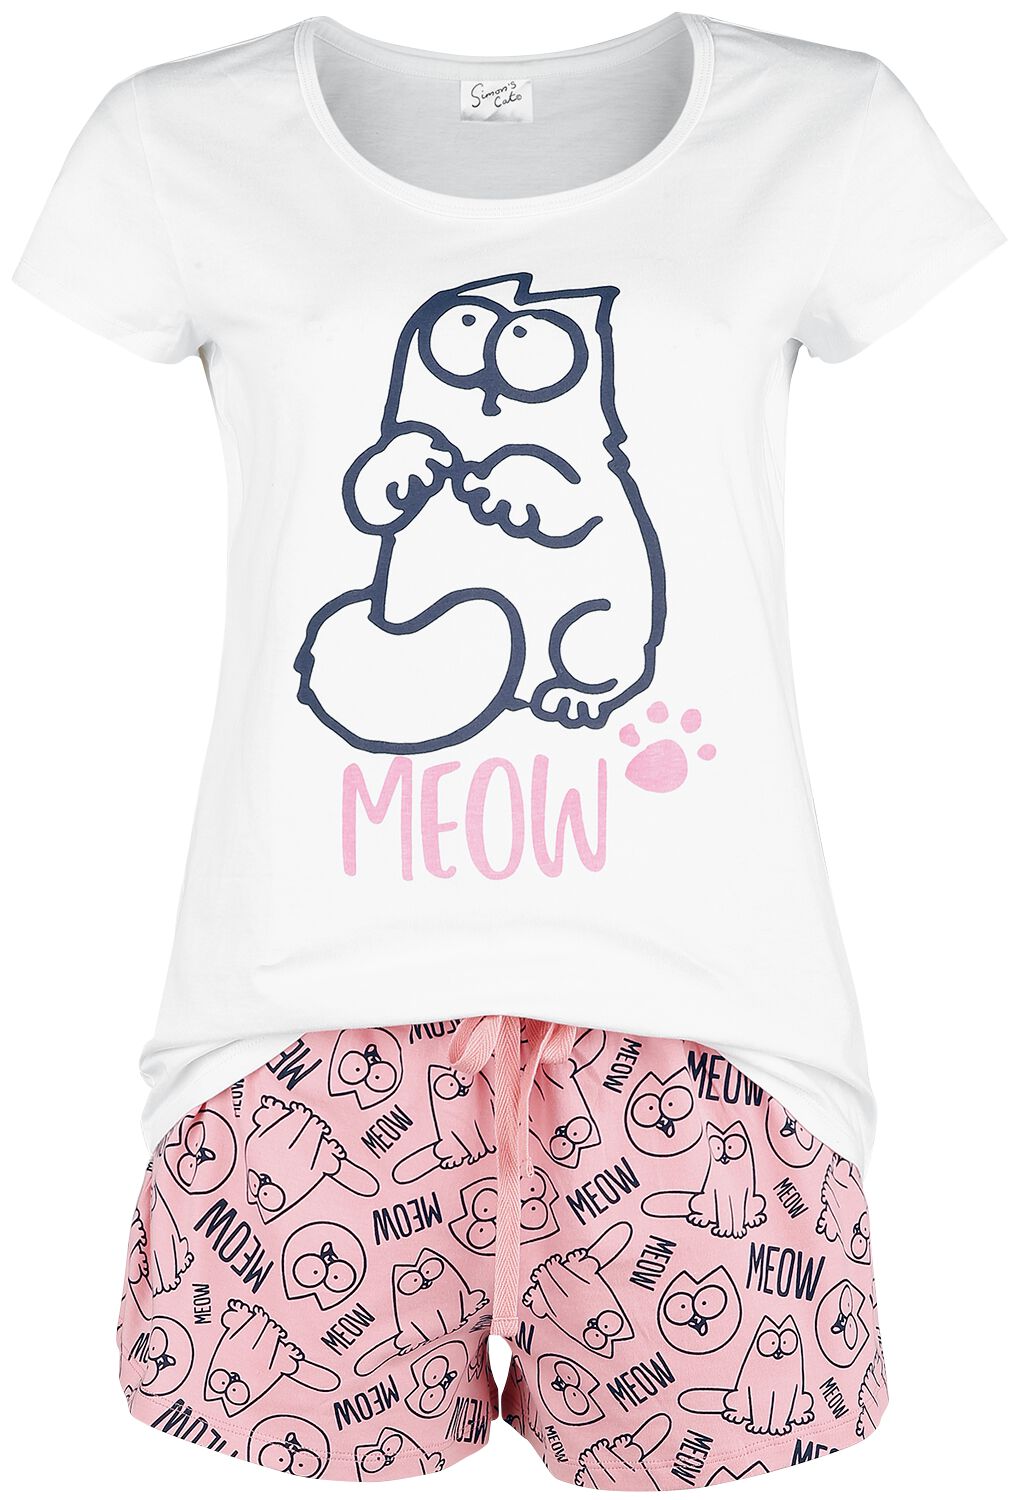 simons cat schlafanzug - meow - m bis 3xl - fÃ¼r damen - grÃ¶ÃŸe xl - - emp exklusives merchandise! weiÃŸ/rosa donna